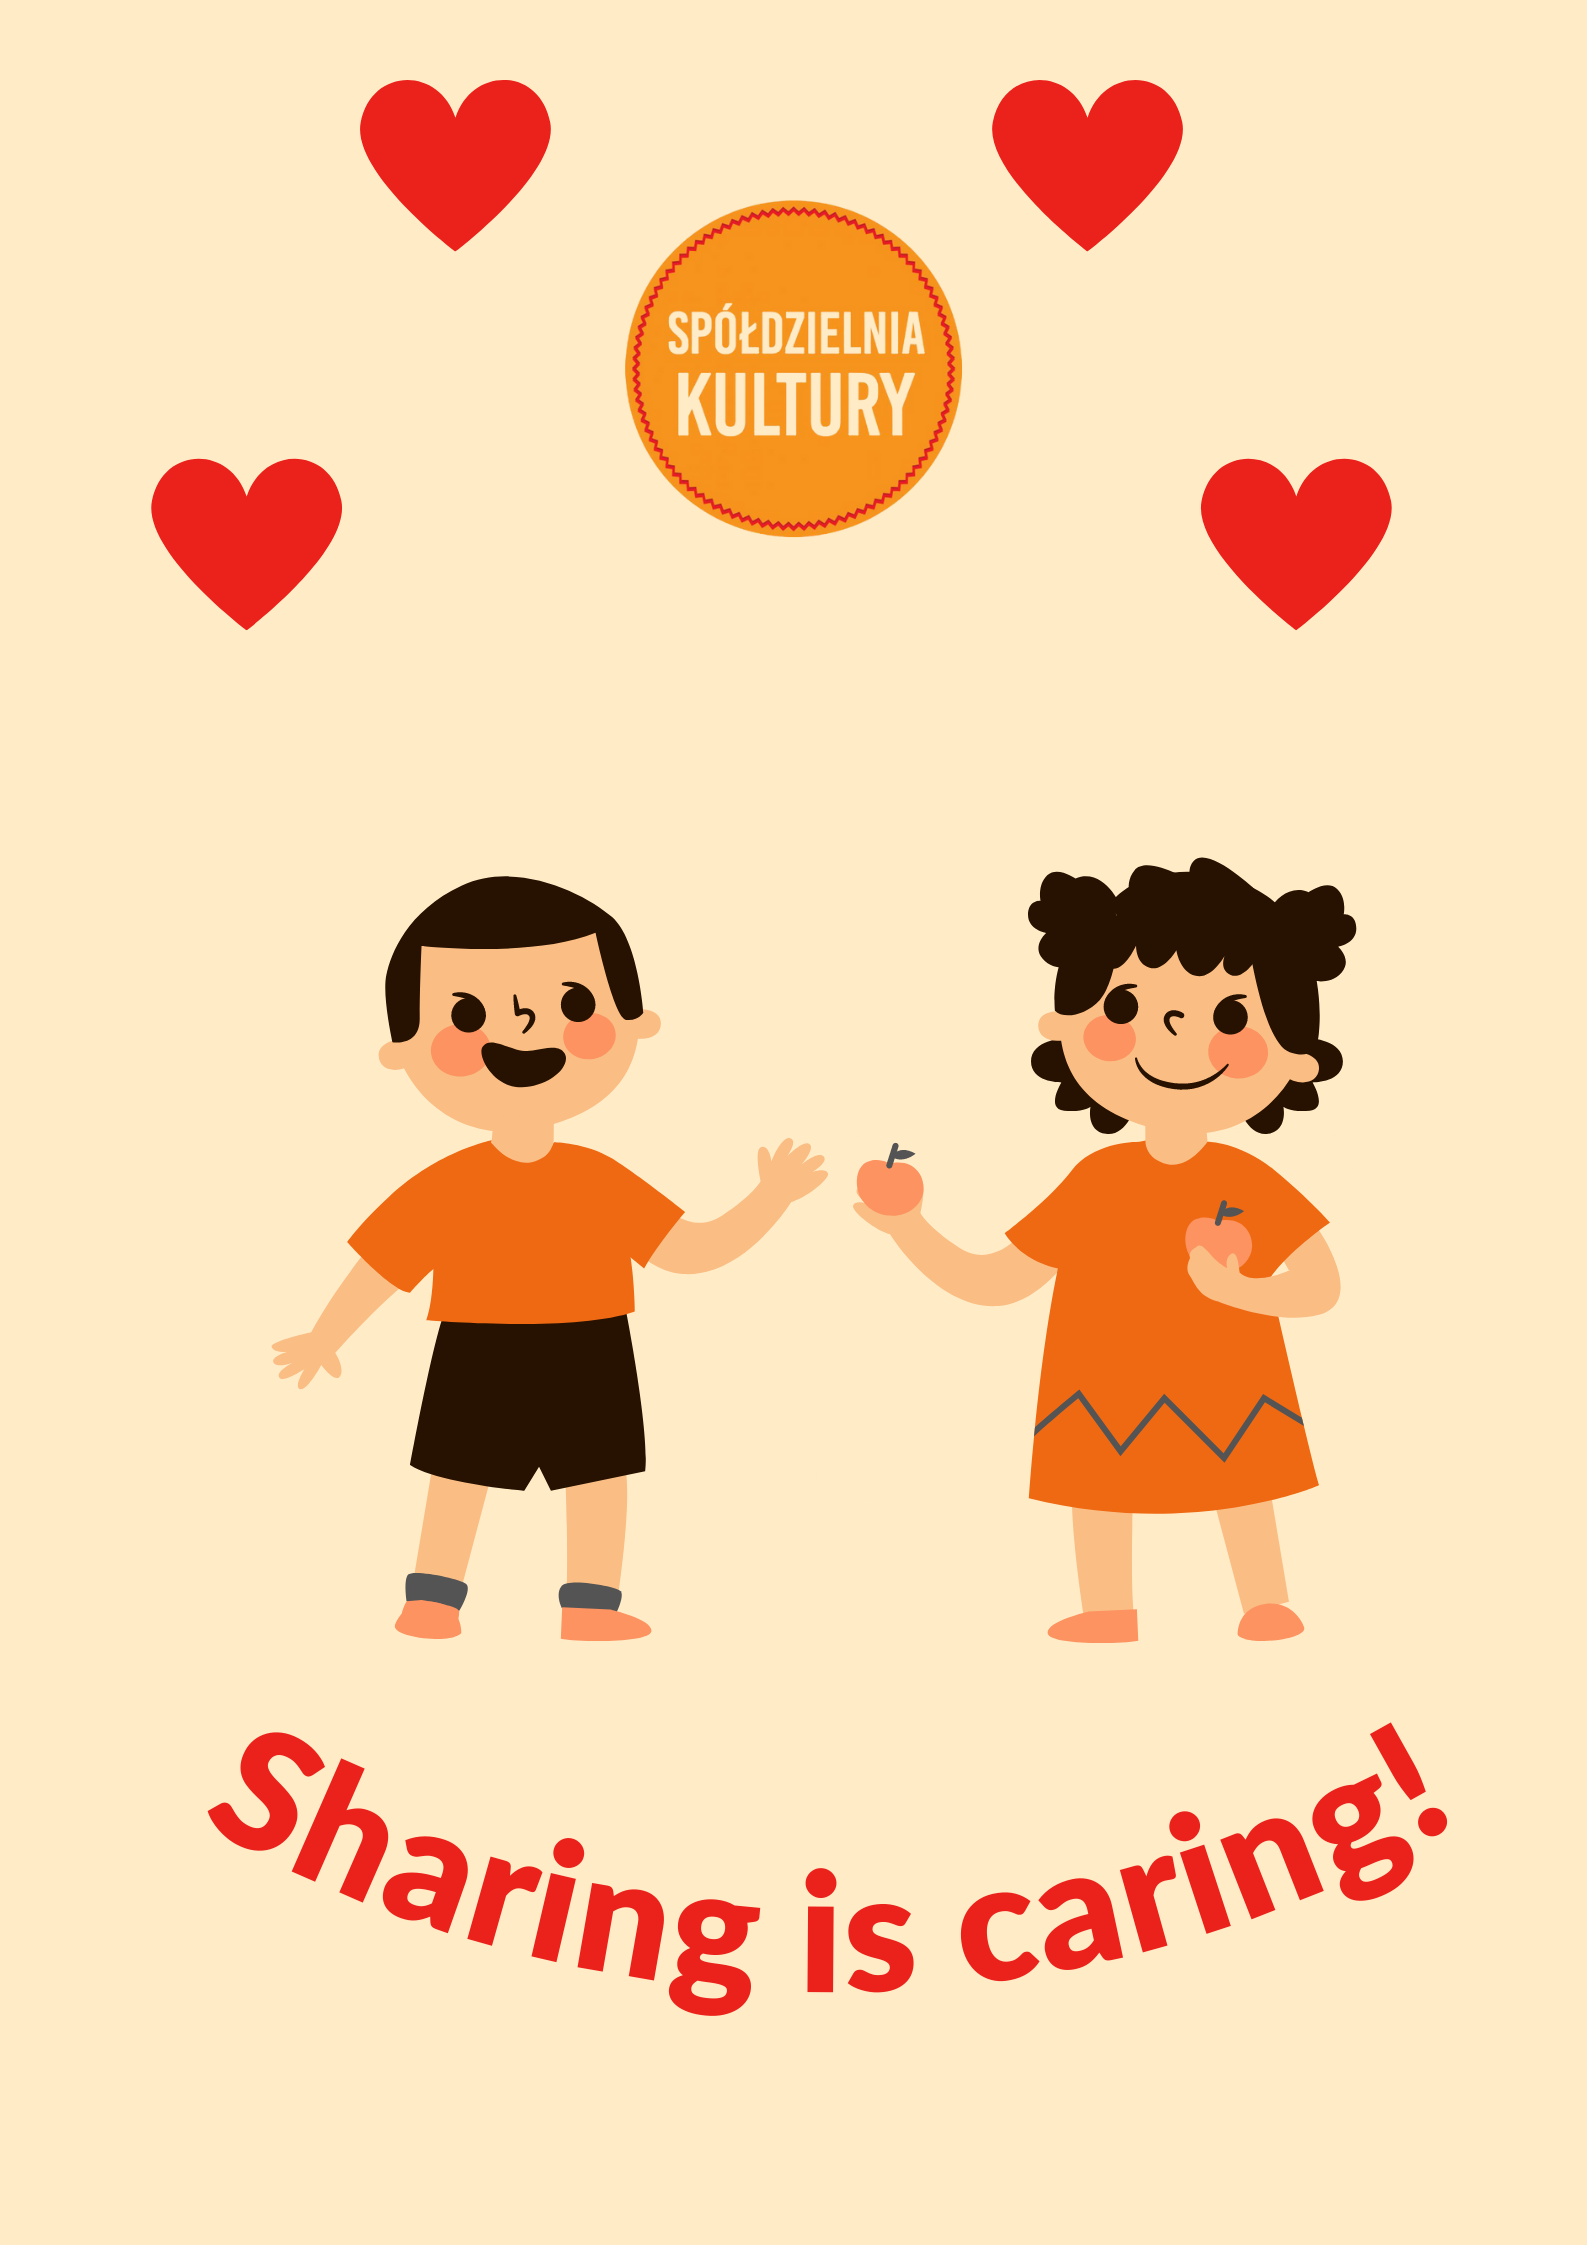 Plakat w stylu walentynki z dwoma osobami dzielącymi się jabłkiem i podpisem "Sharing is caring!"